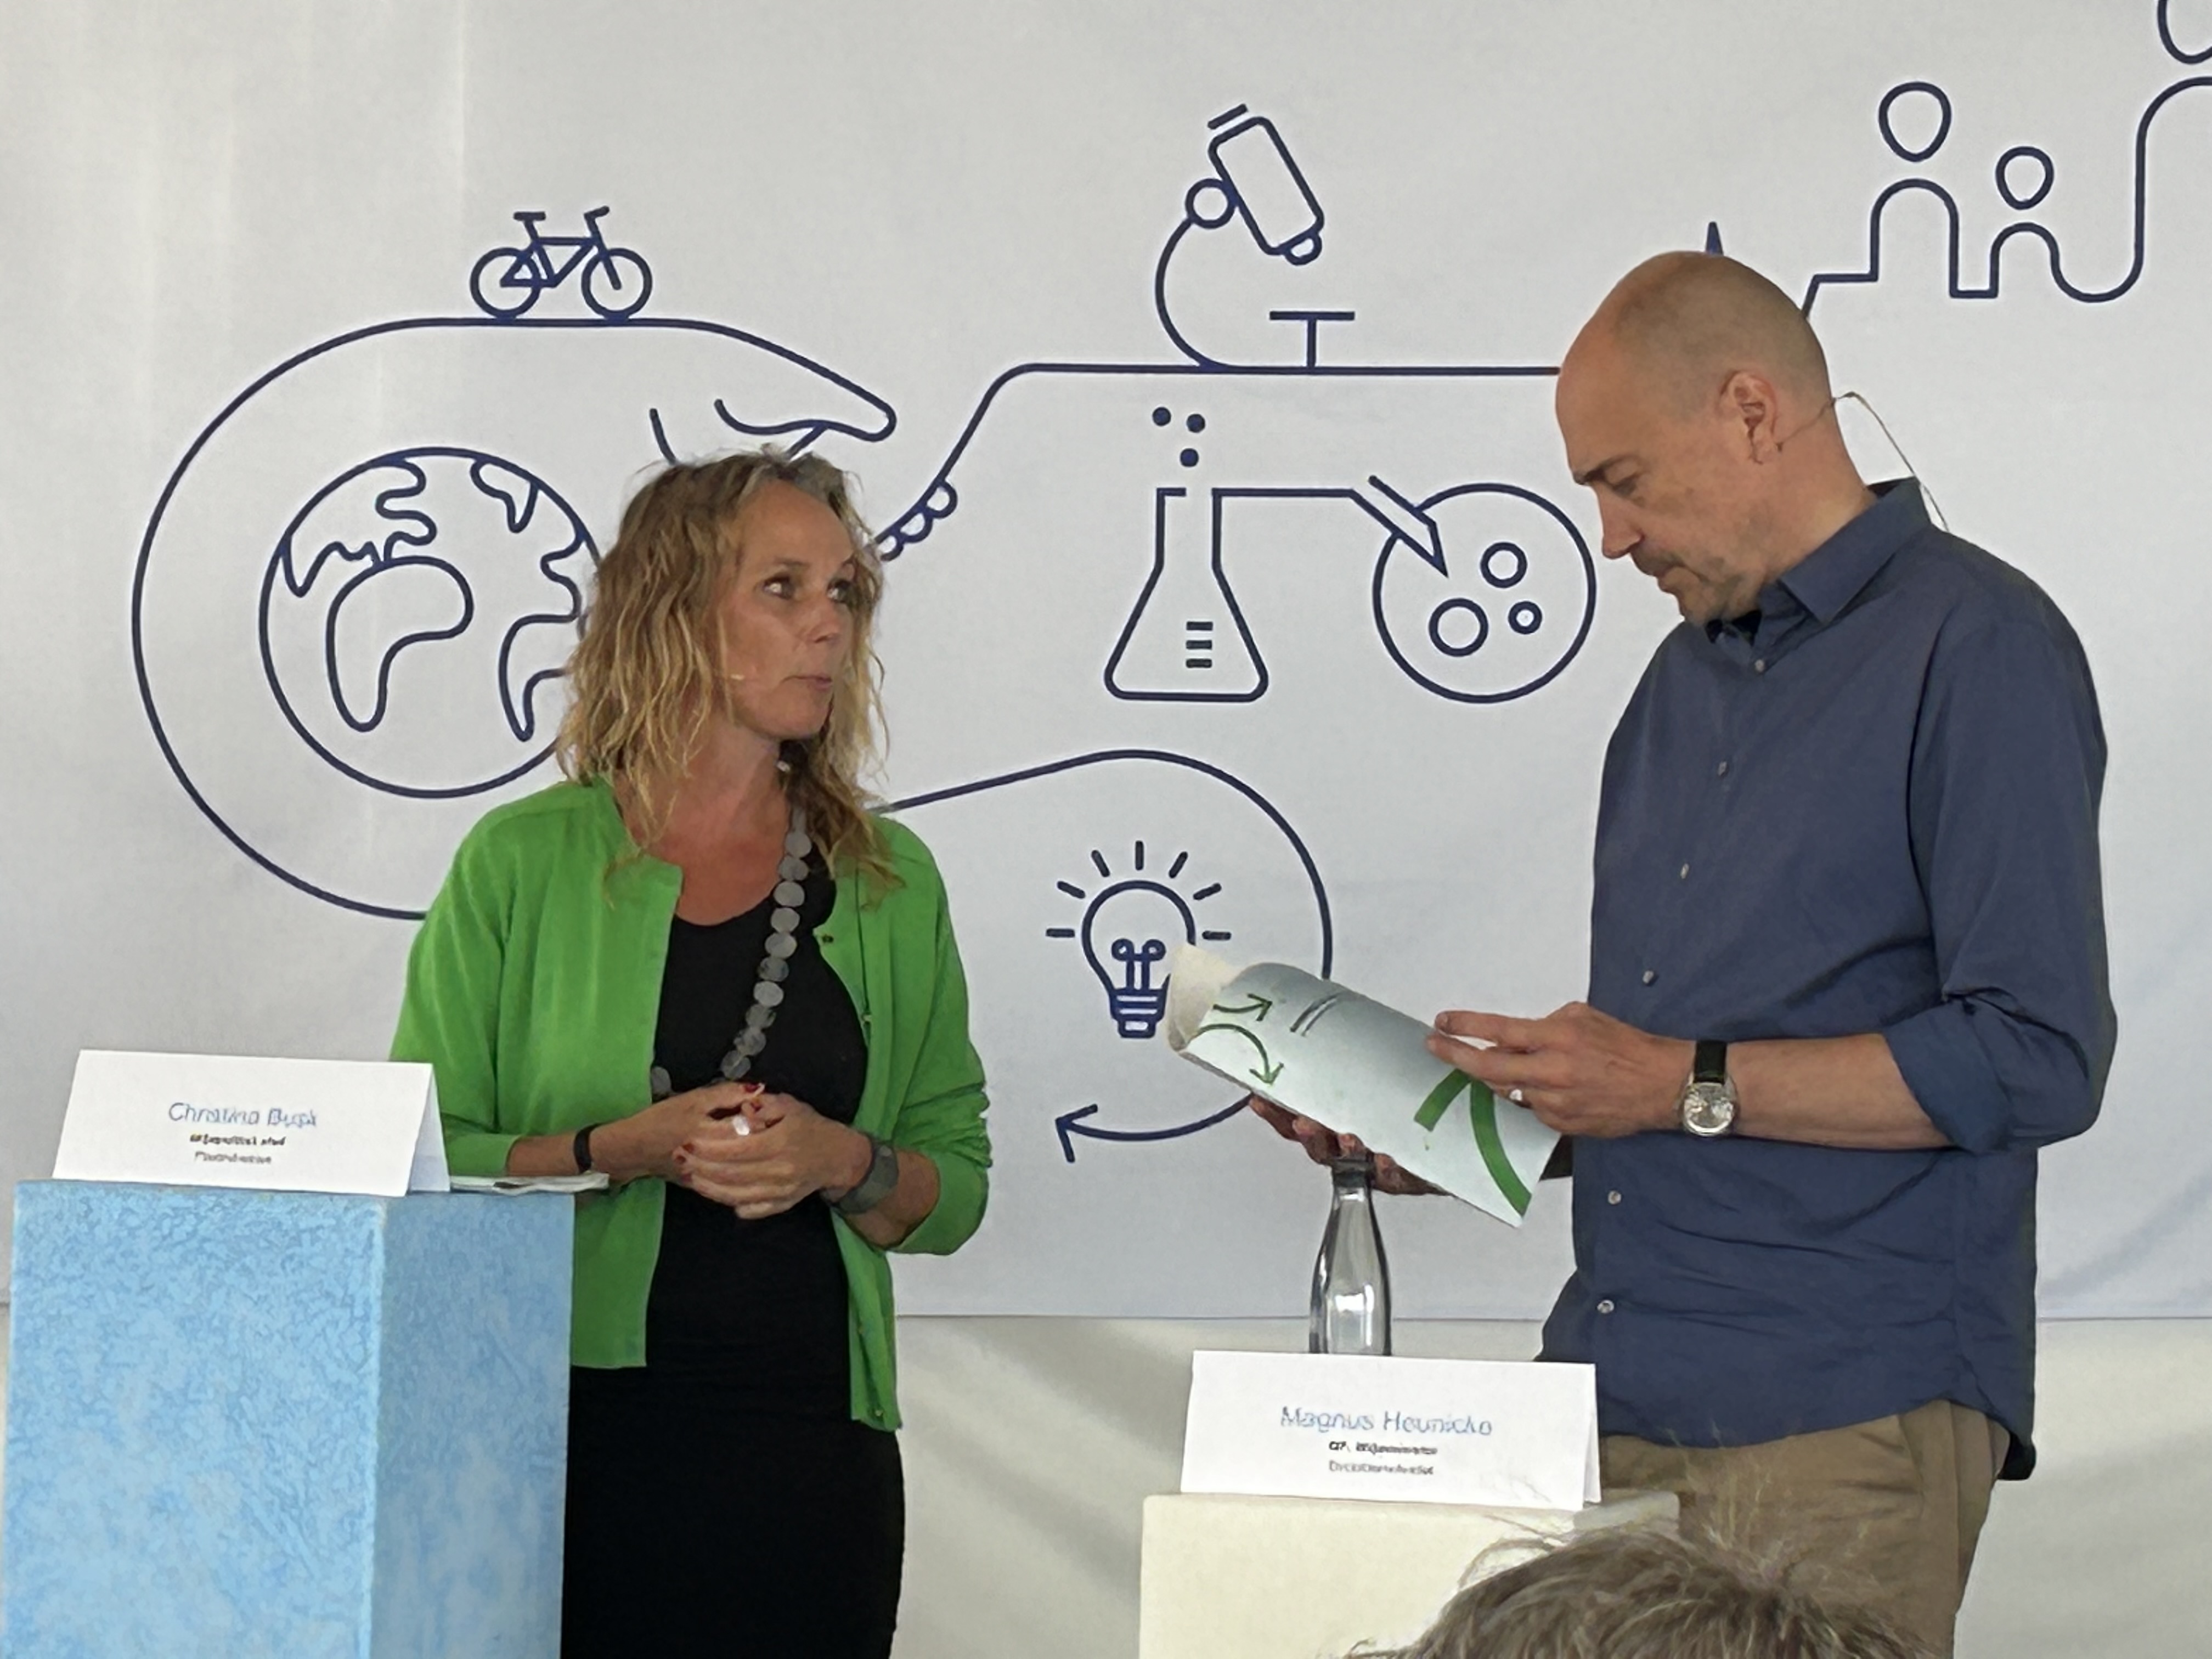 Miljøpolitisk chef i Plastindustrien, Christina Busk, overrækker første udgave af designguiden til miljøministeren